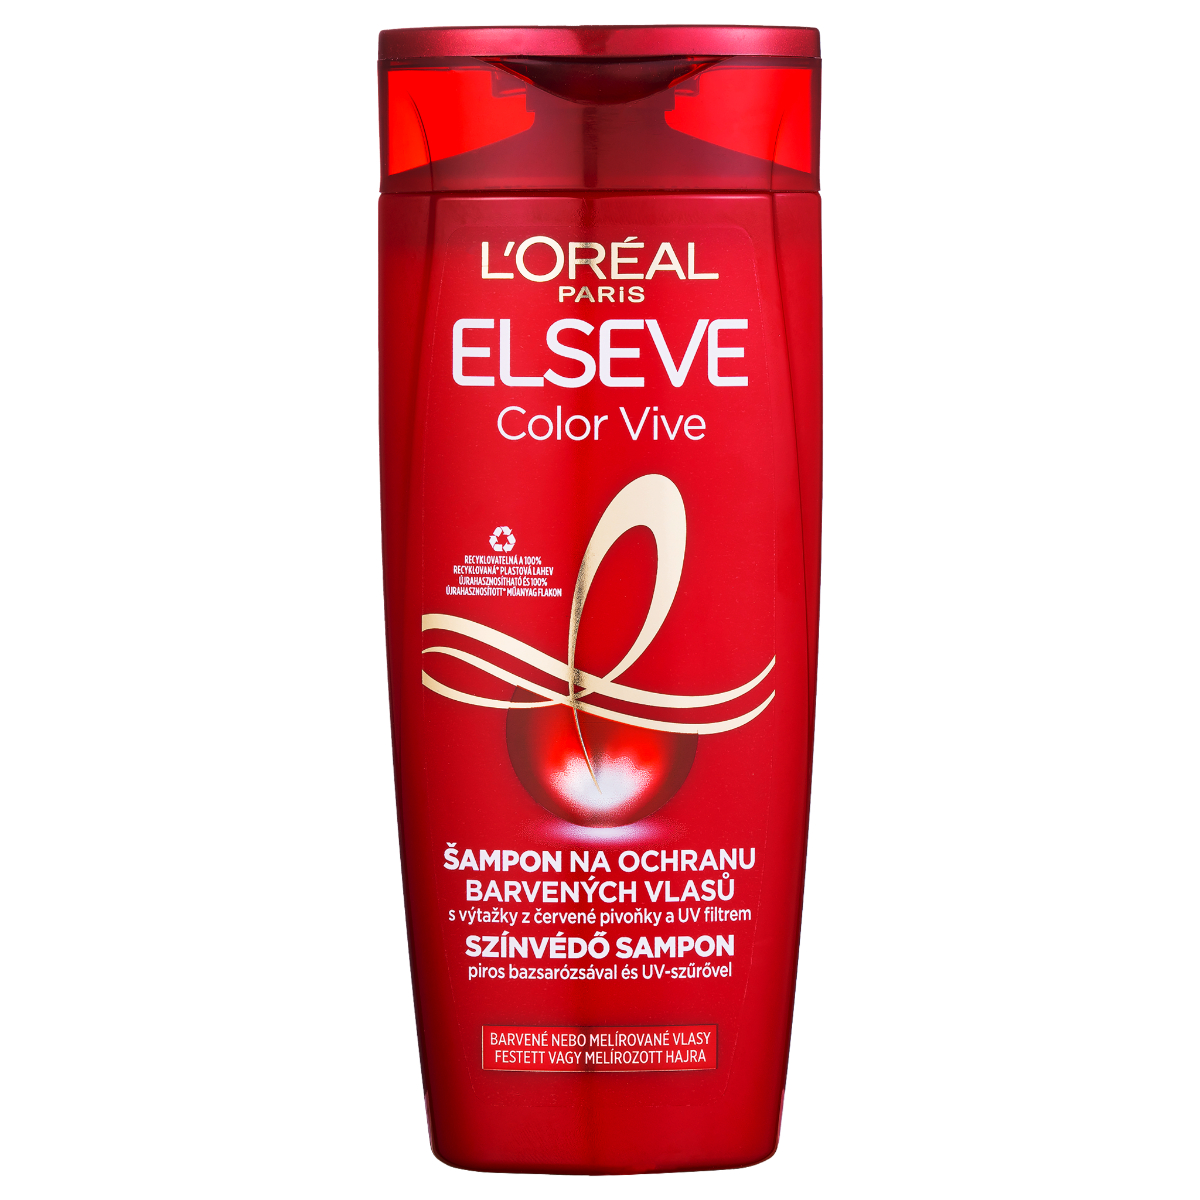 ELSEVE Color Vive, šampón s ochrannou starostlivosťou na farbené vlasy 250ml - 250ml